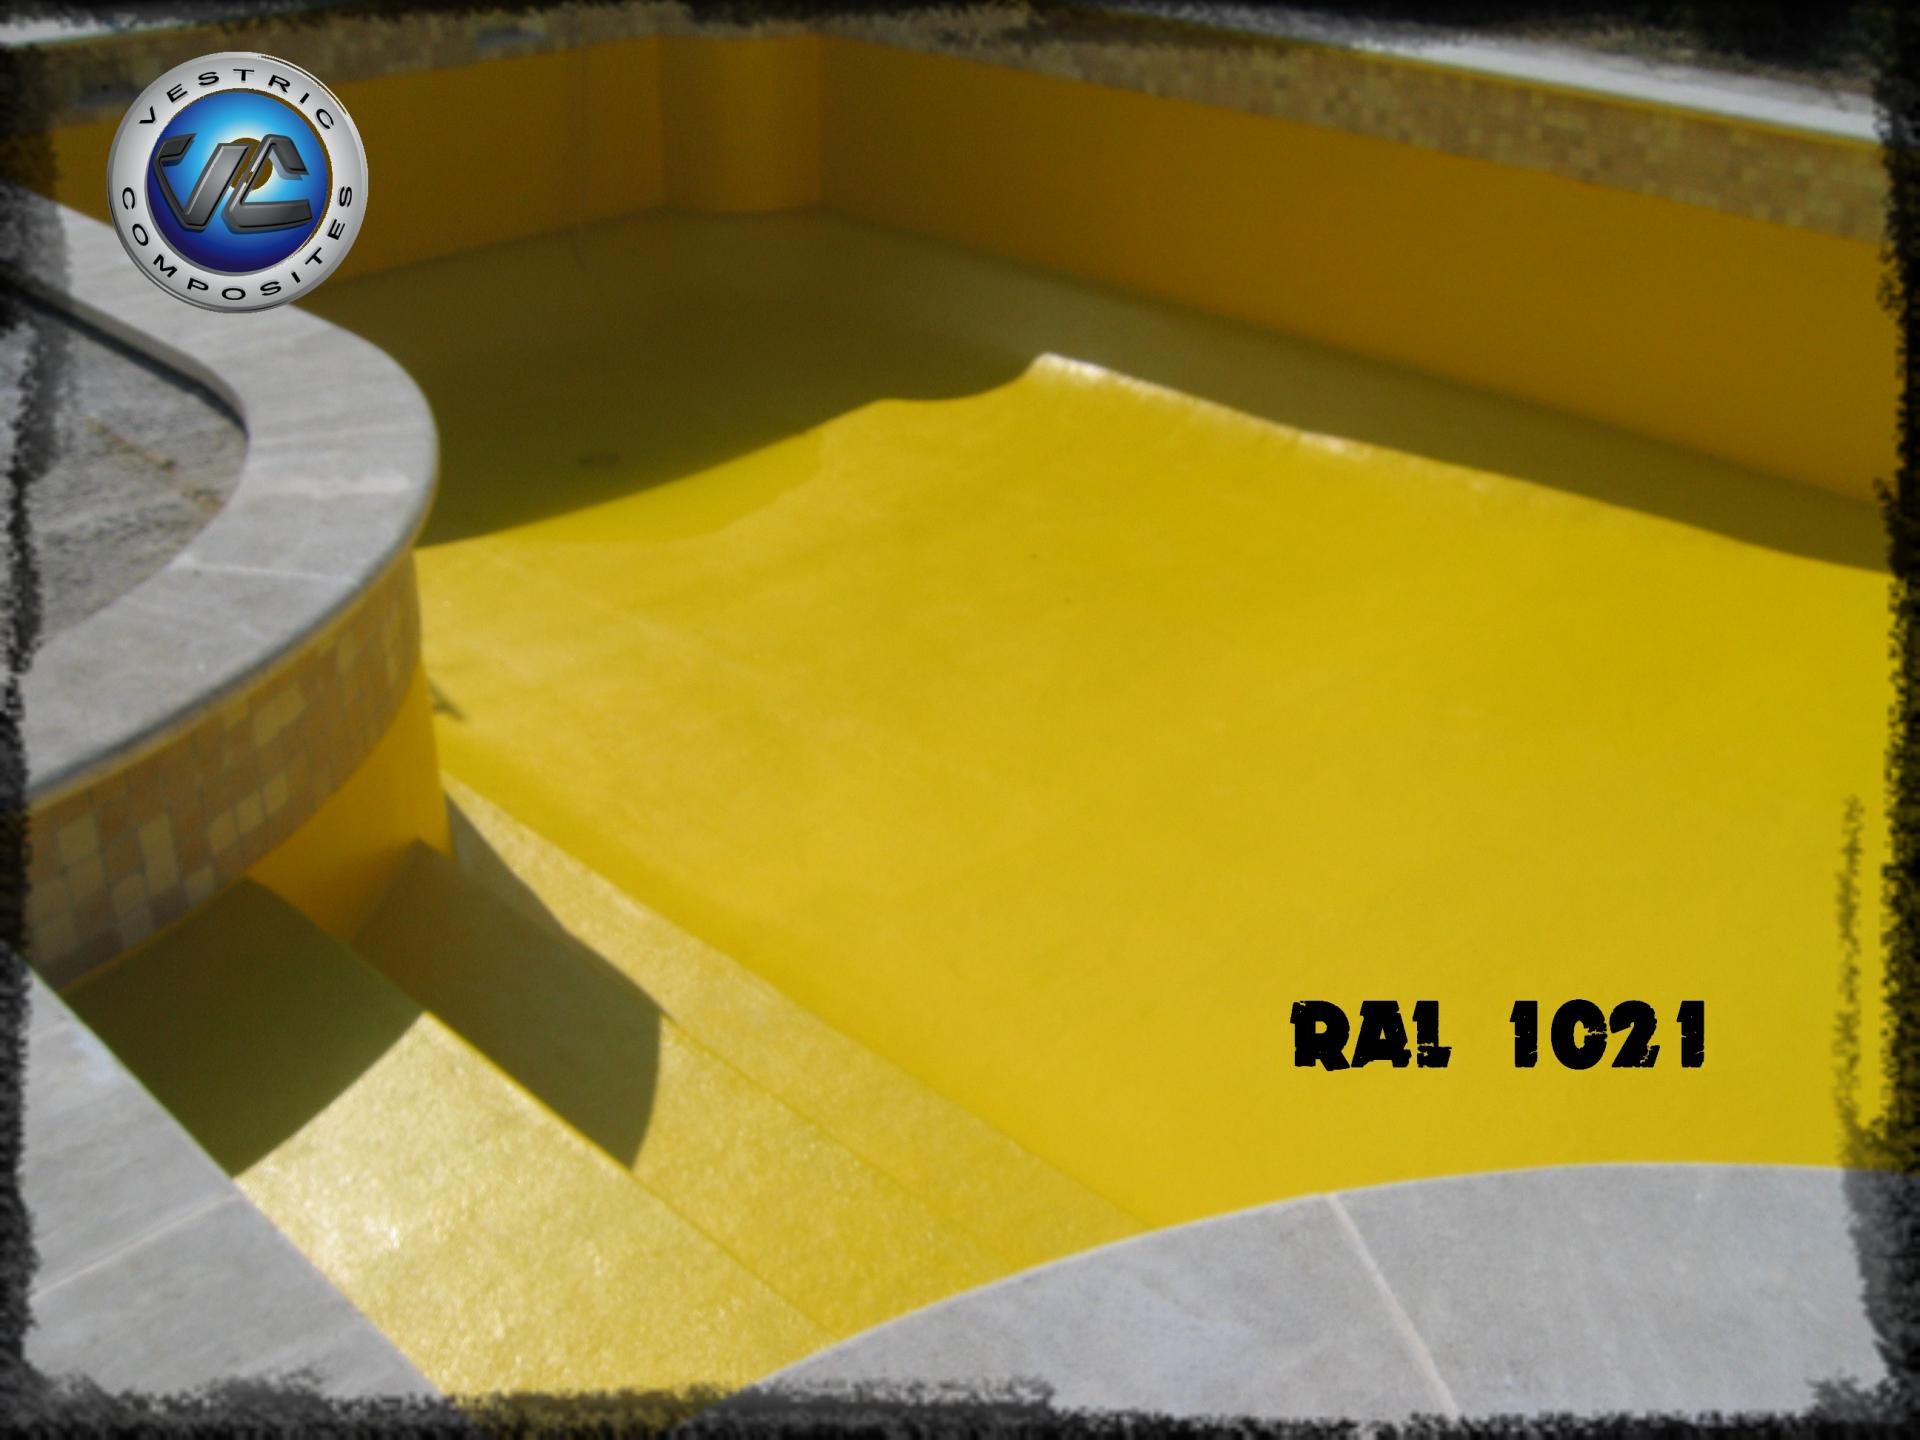 ral-1021-jaune-colza-couleur-resine-gel-coat-piscine-en-eau-vestric-composites-revêtement-polyester